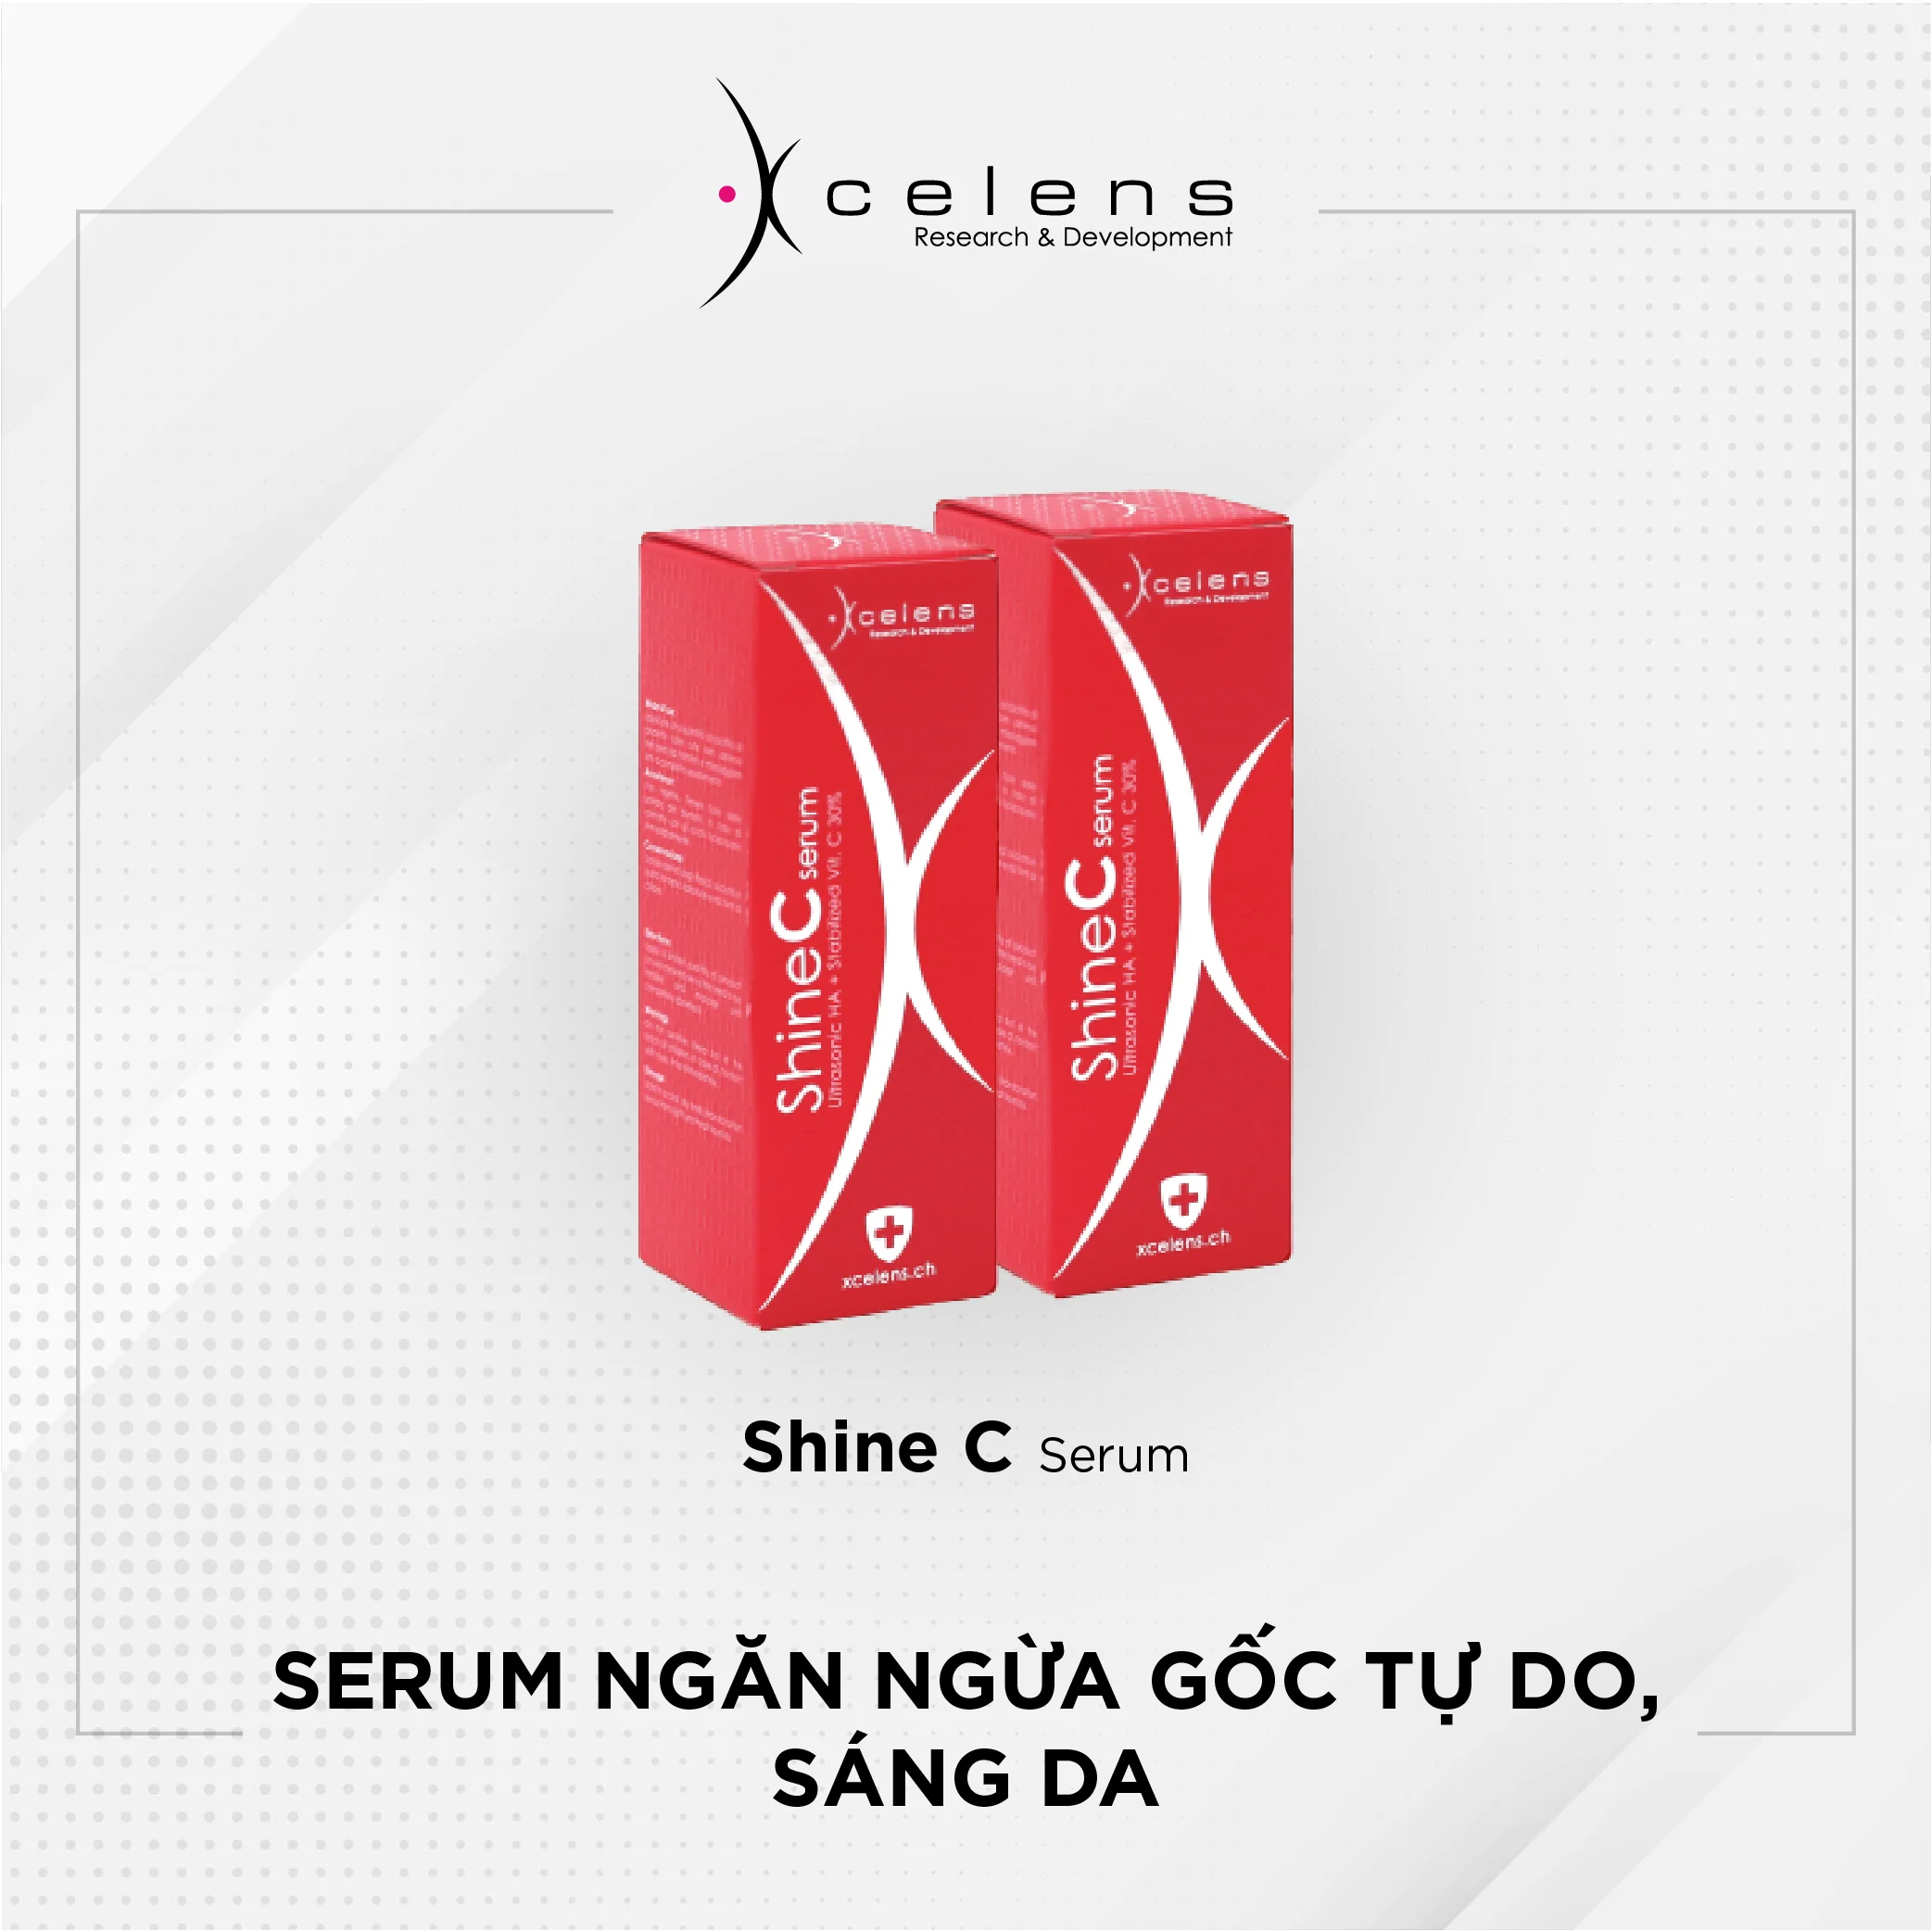 Shine C Serum - Serum ngăn ngừa gốc tự do, sáng da (Vitamin C 30%)